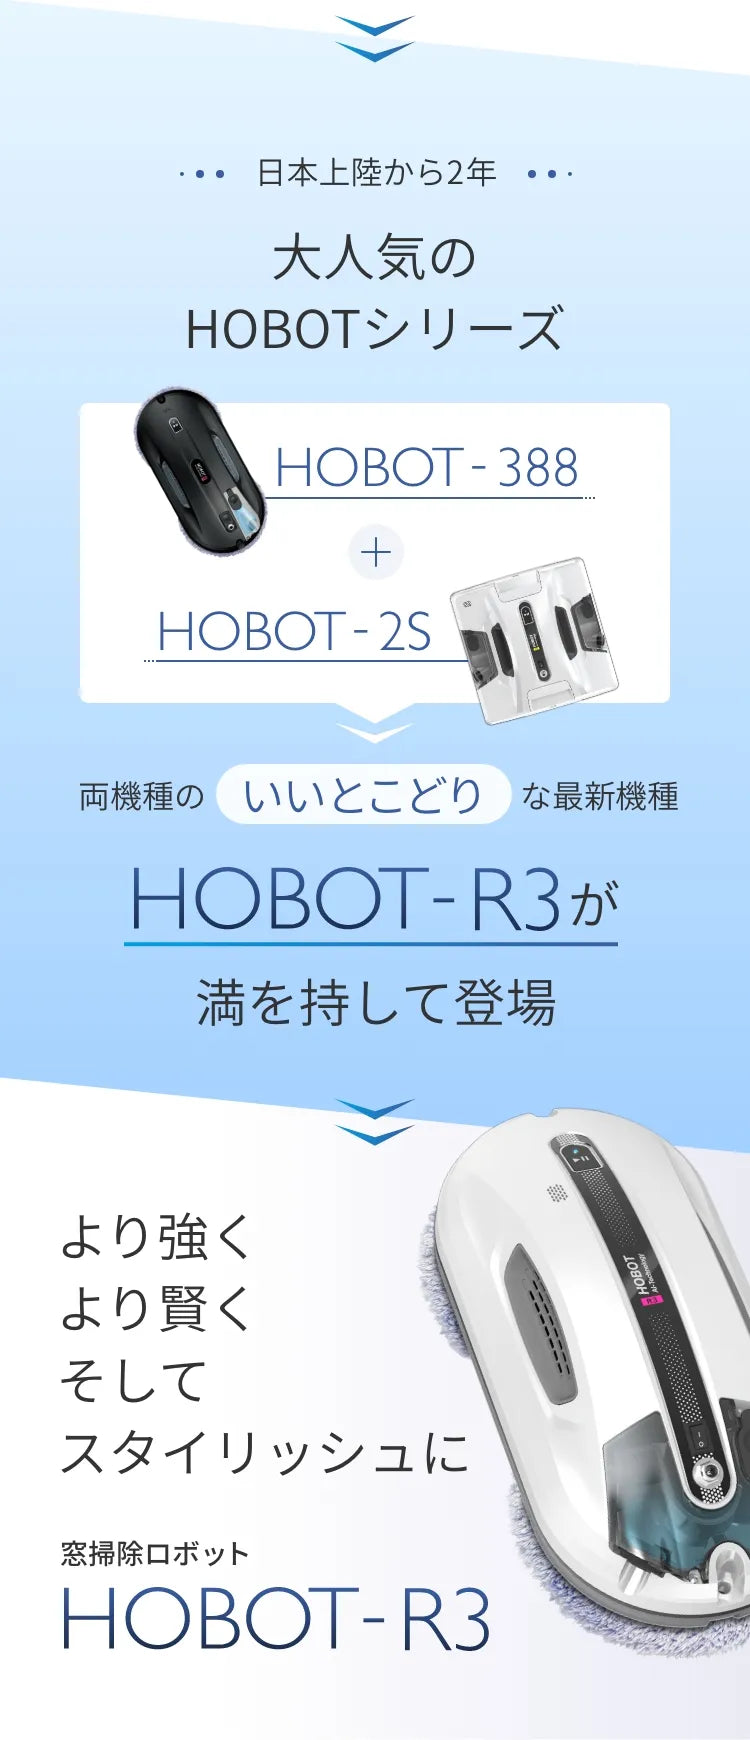 窓掃除ロボットHOBOT-R3の画像